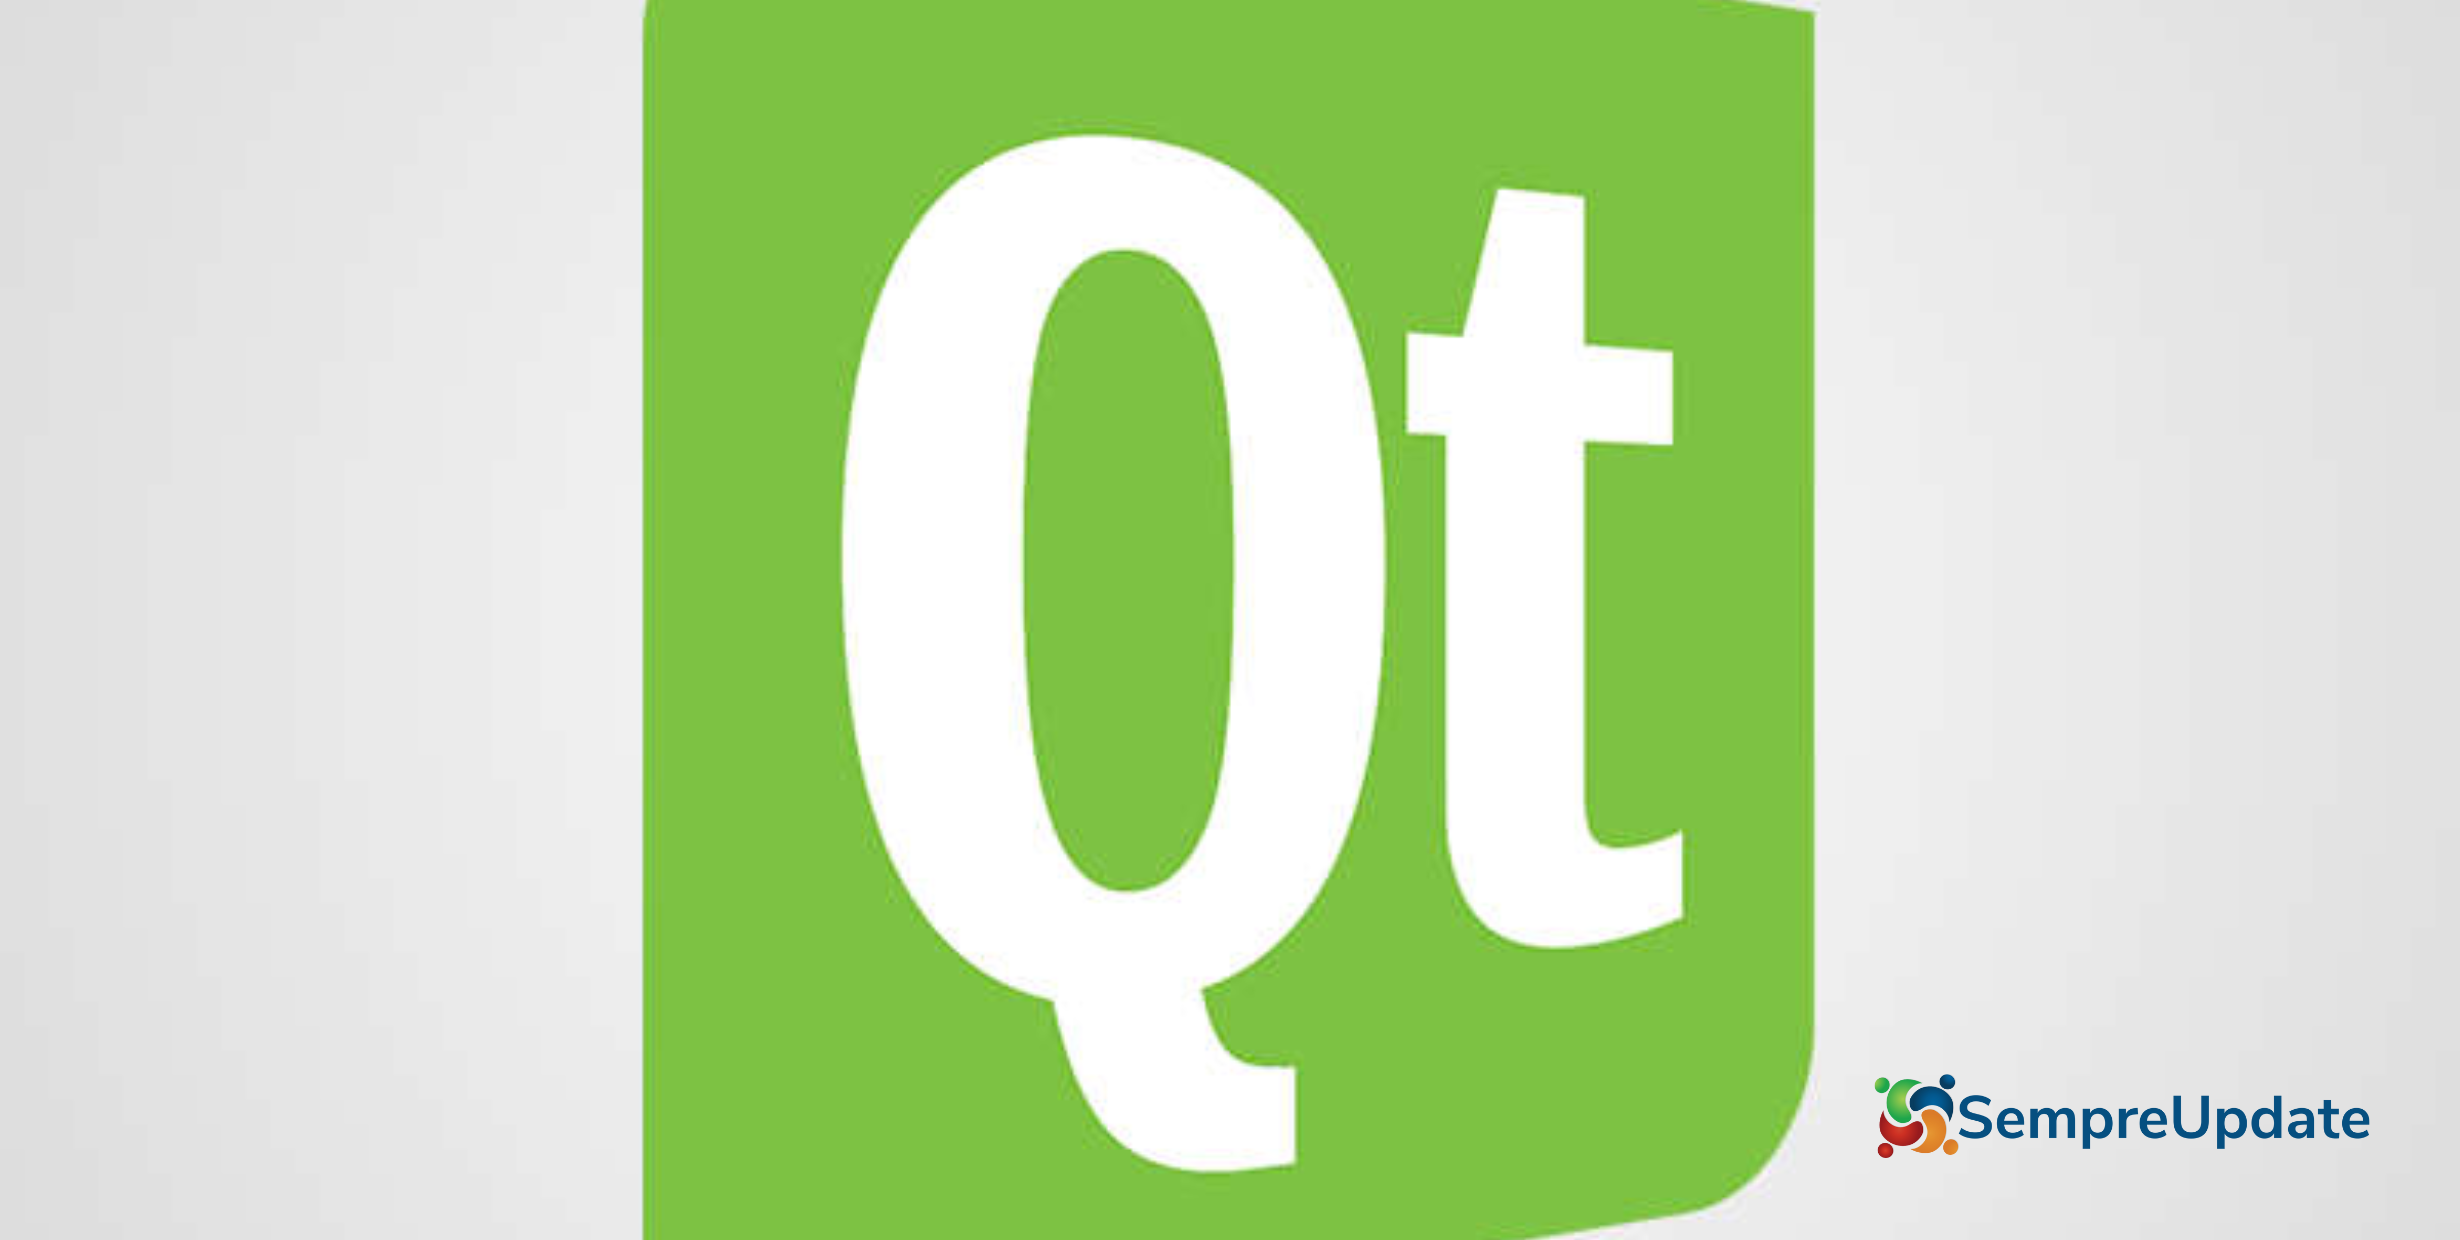 Qt 6.7 Beta chega com suporte a fonte variável & QRhiWidget Class